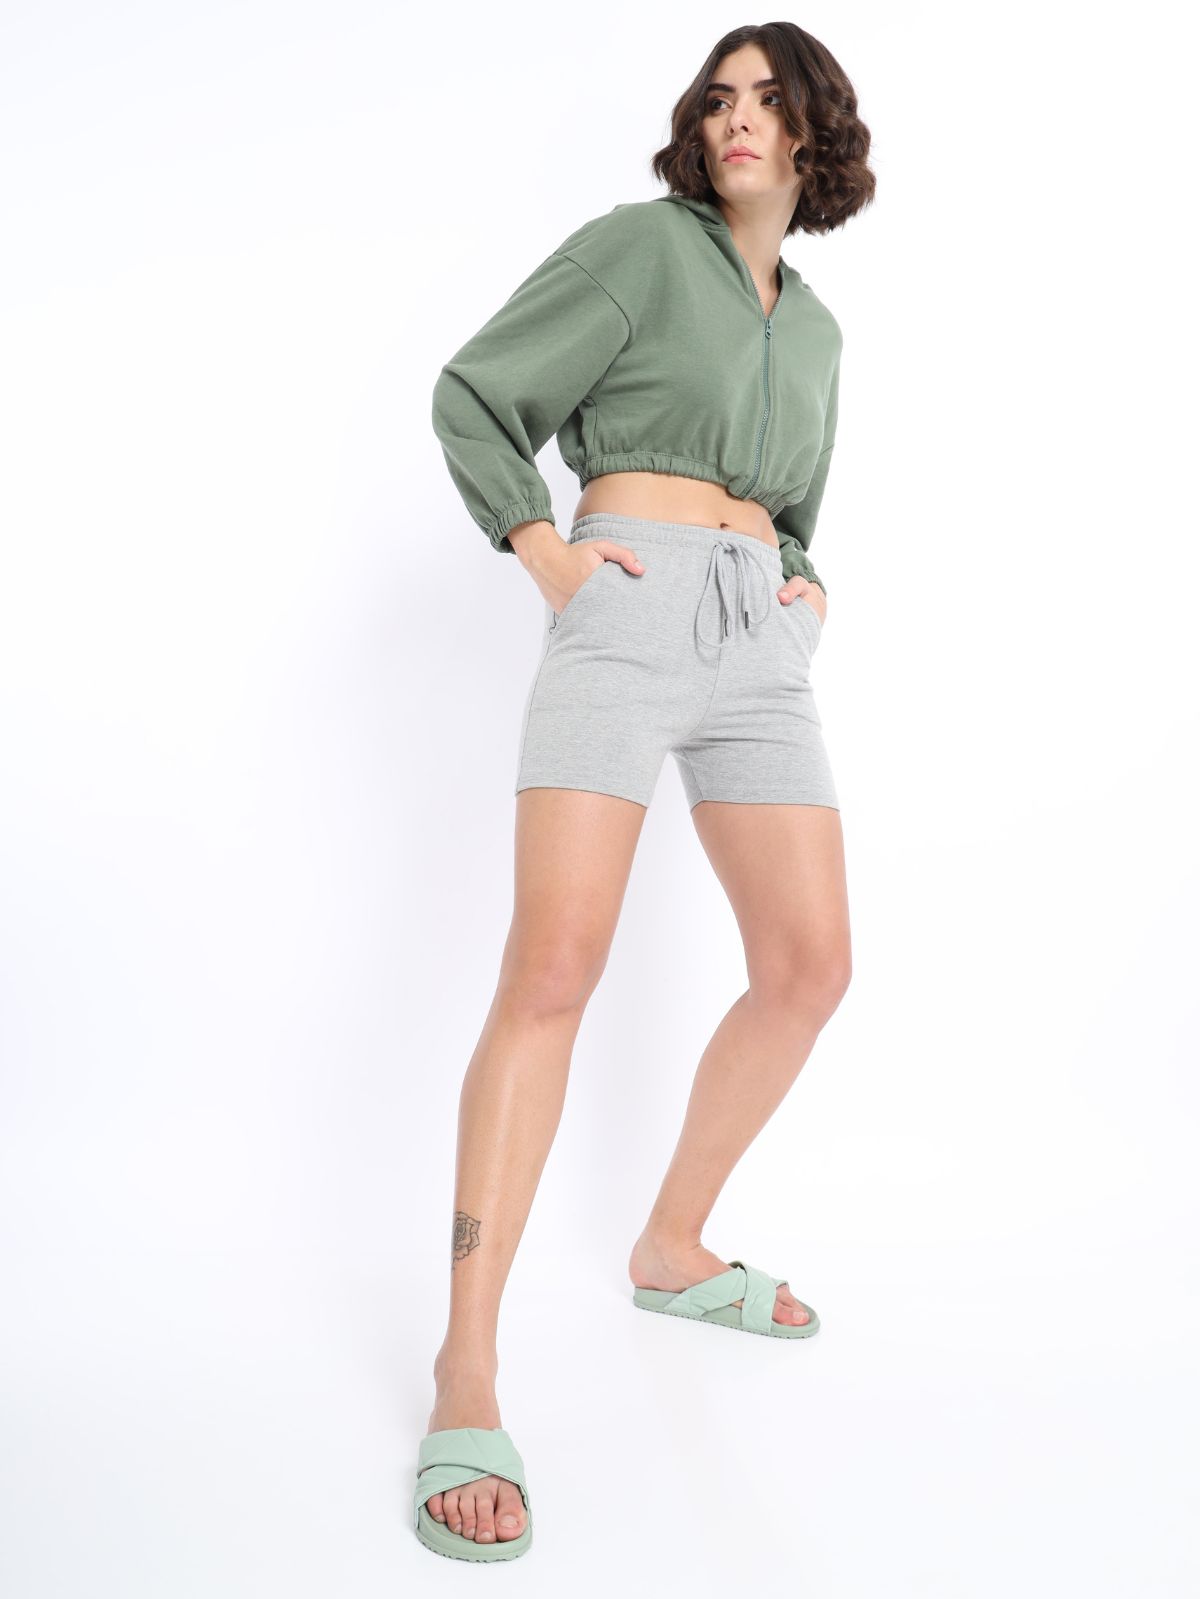 Legging For Girls - Stylish, Dryt Fit & Comfort – Nobero